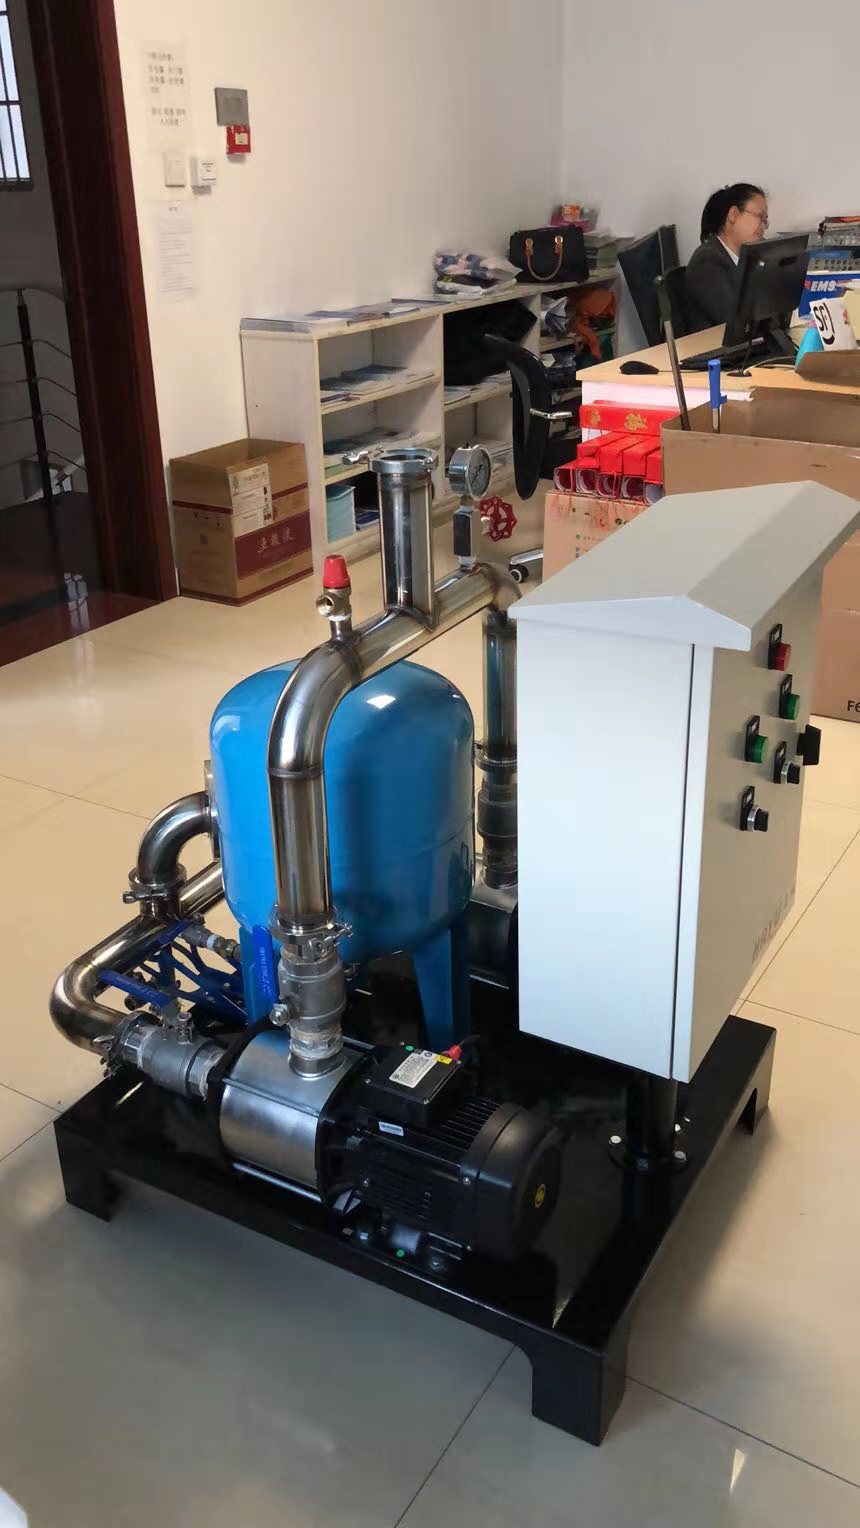 空气源热泵机组新伴侣水力模块系统整体分析